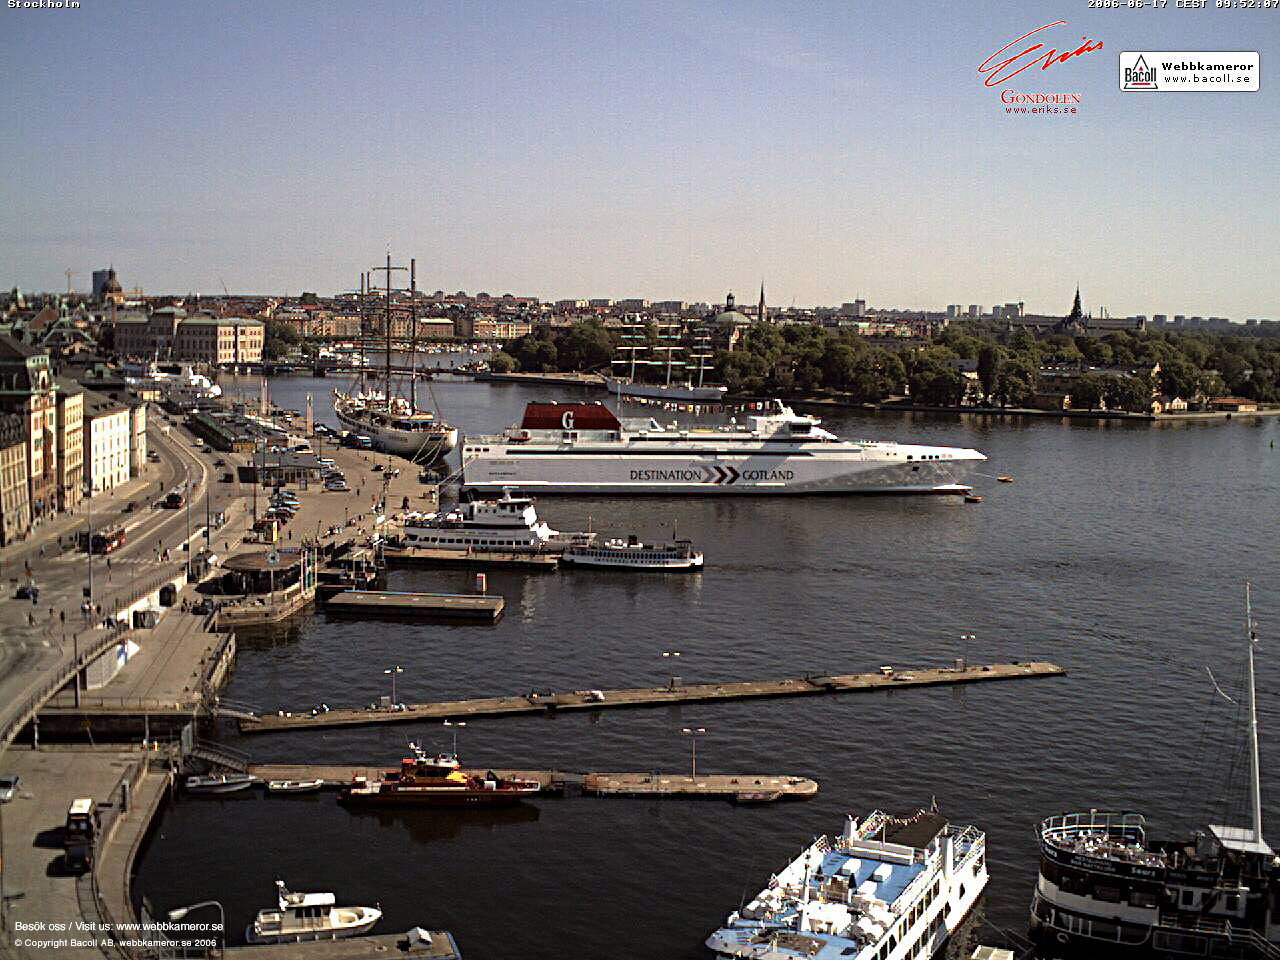 Webbkamera, Stockholm, webcam, väder, weather, Destinationgotland, Gotlandsfärja